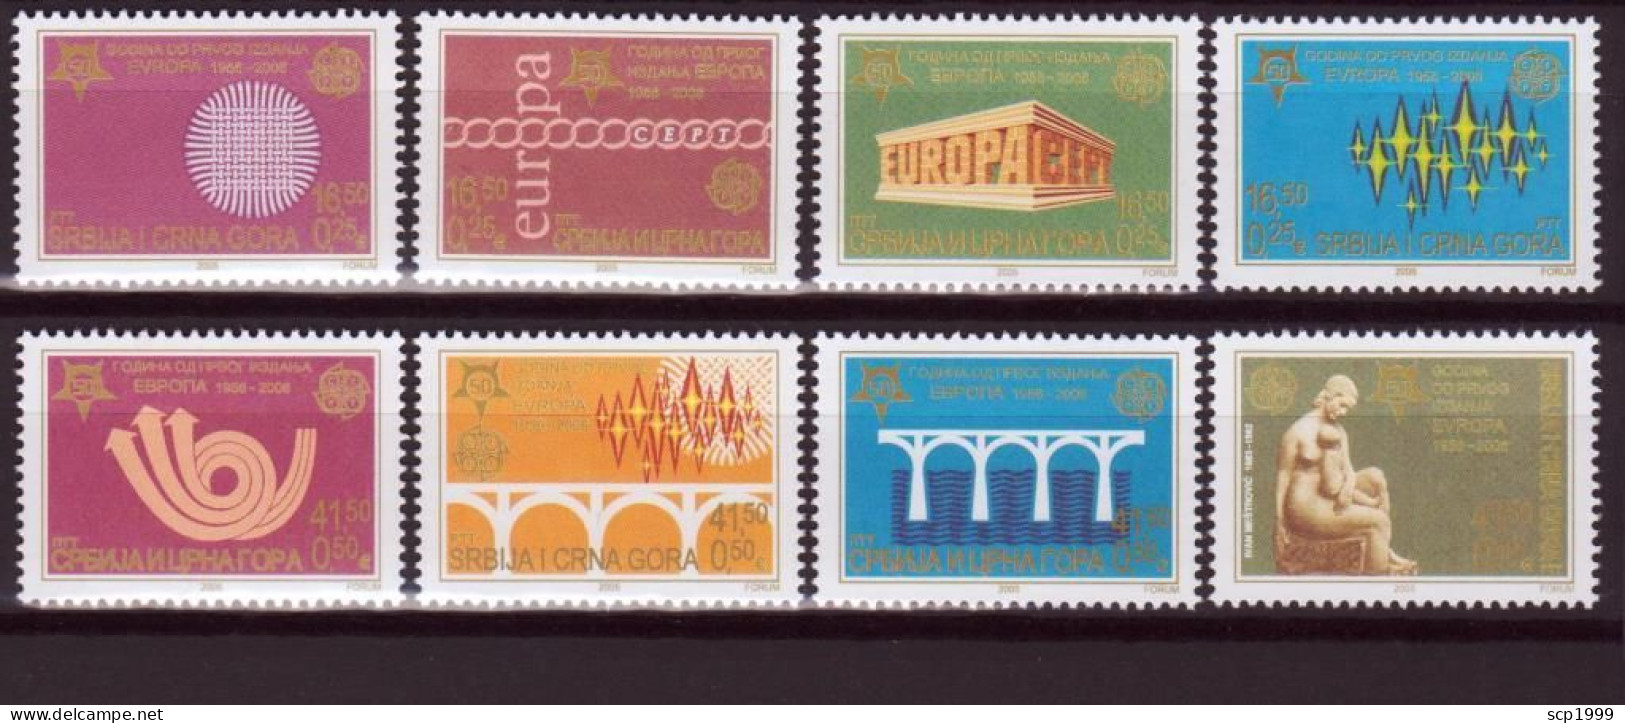 Serbia 2006 - Europa 50 Years Stamps Set MNH - Serbie